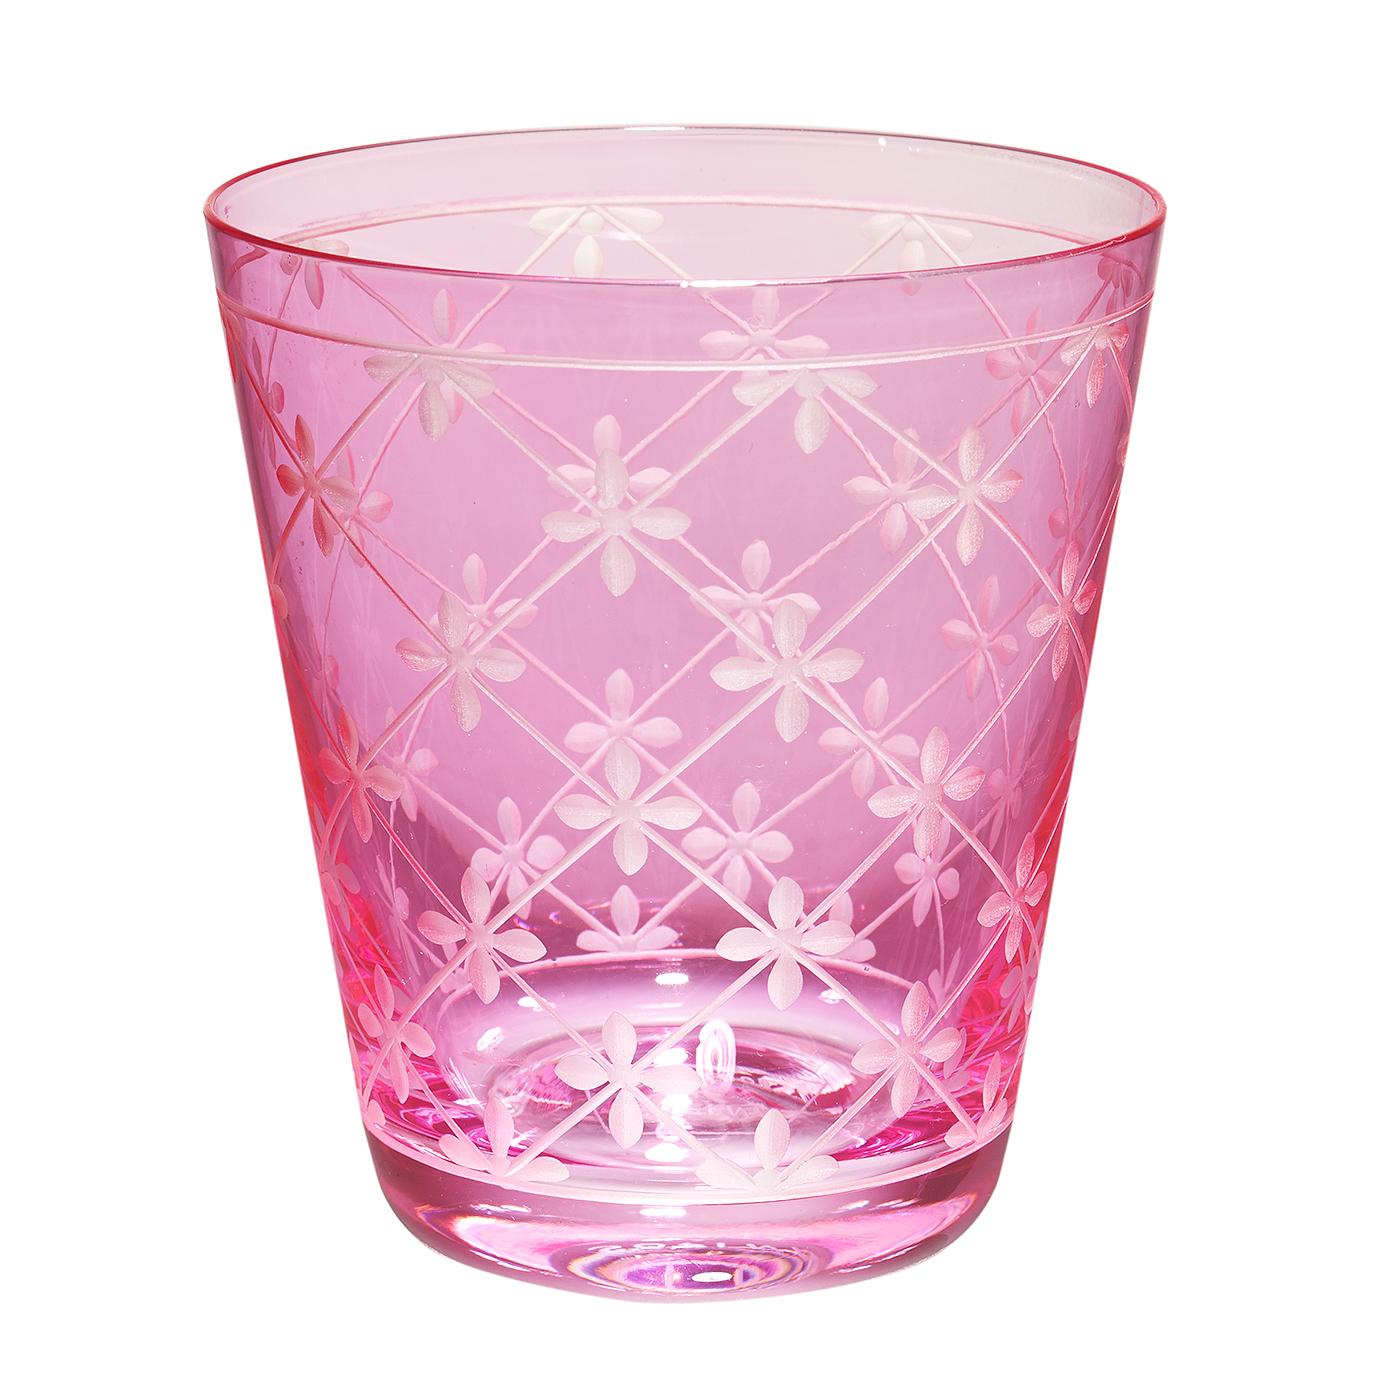 Set aus sechs mundgeblasenen Bechern in rosa Kristall mit einem handgeschliffenen Dekor im Landhausstil. Das Dekor zeigt ein handgraviertes Dekor auf dem gesamten Glas. Handgefertigt in Bayern/Deutschland. Kann in verschiedenen Farben wie rosa, grün